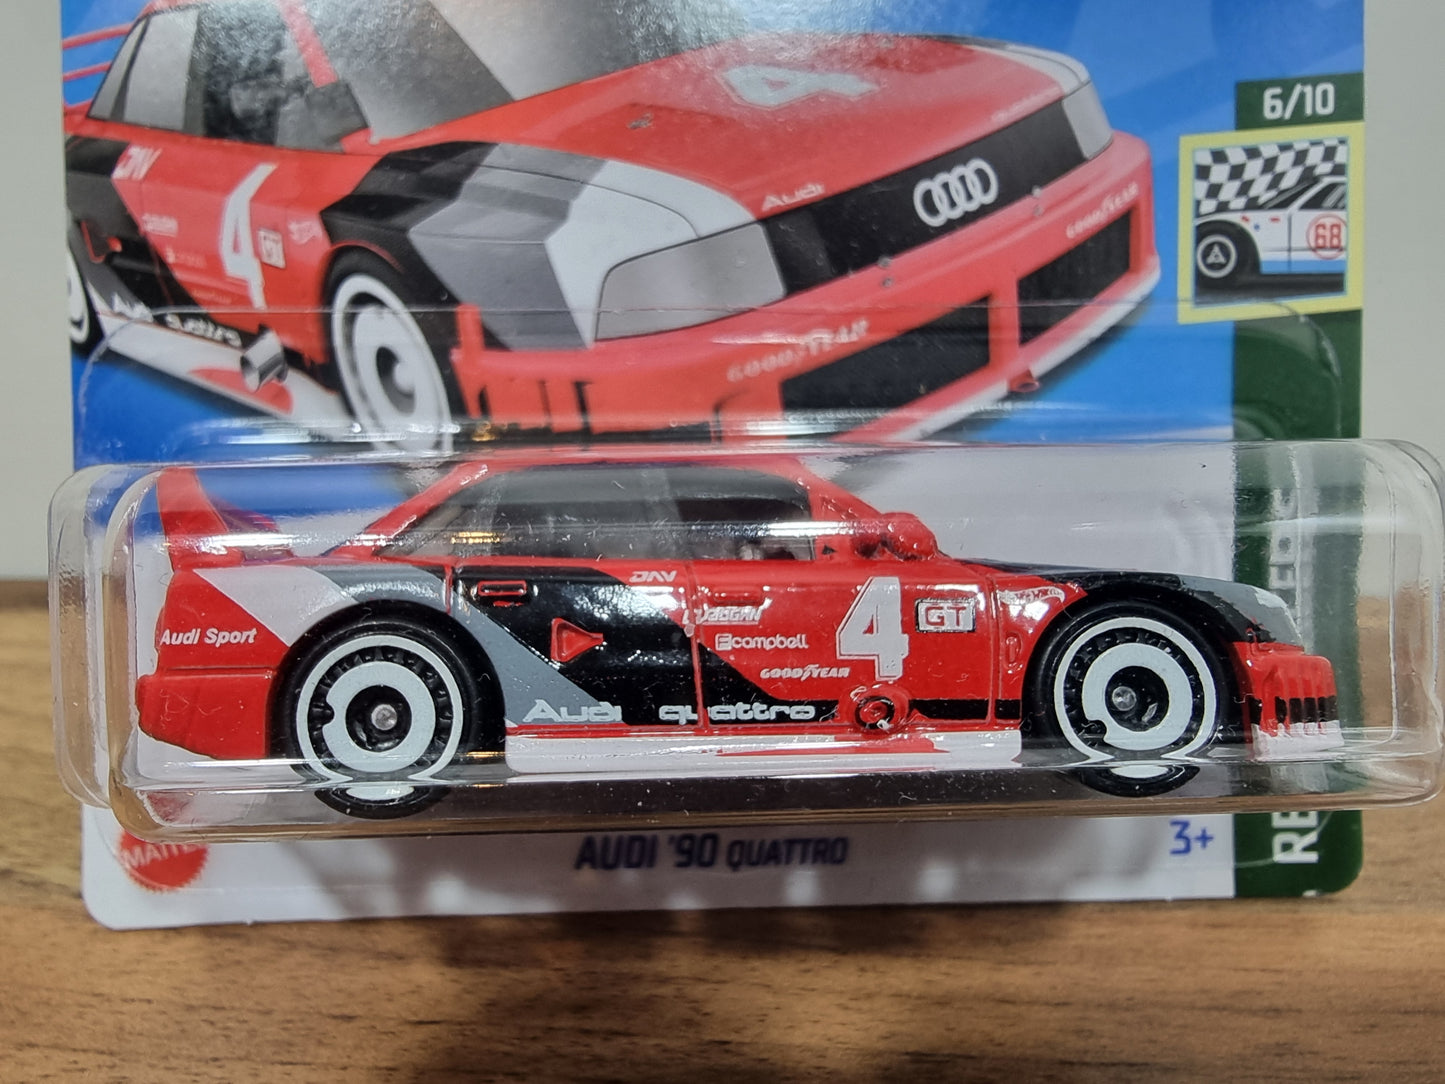 Hot Wheels Audi '90 Quattro